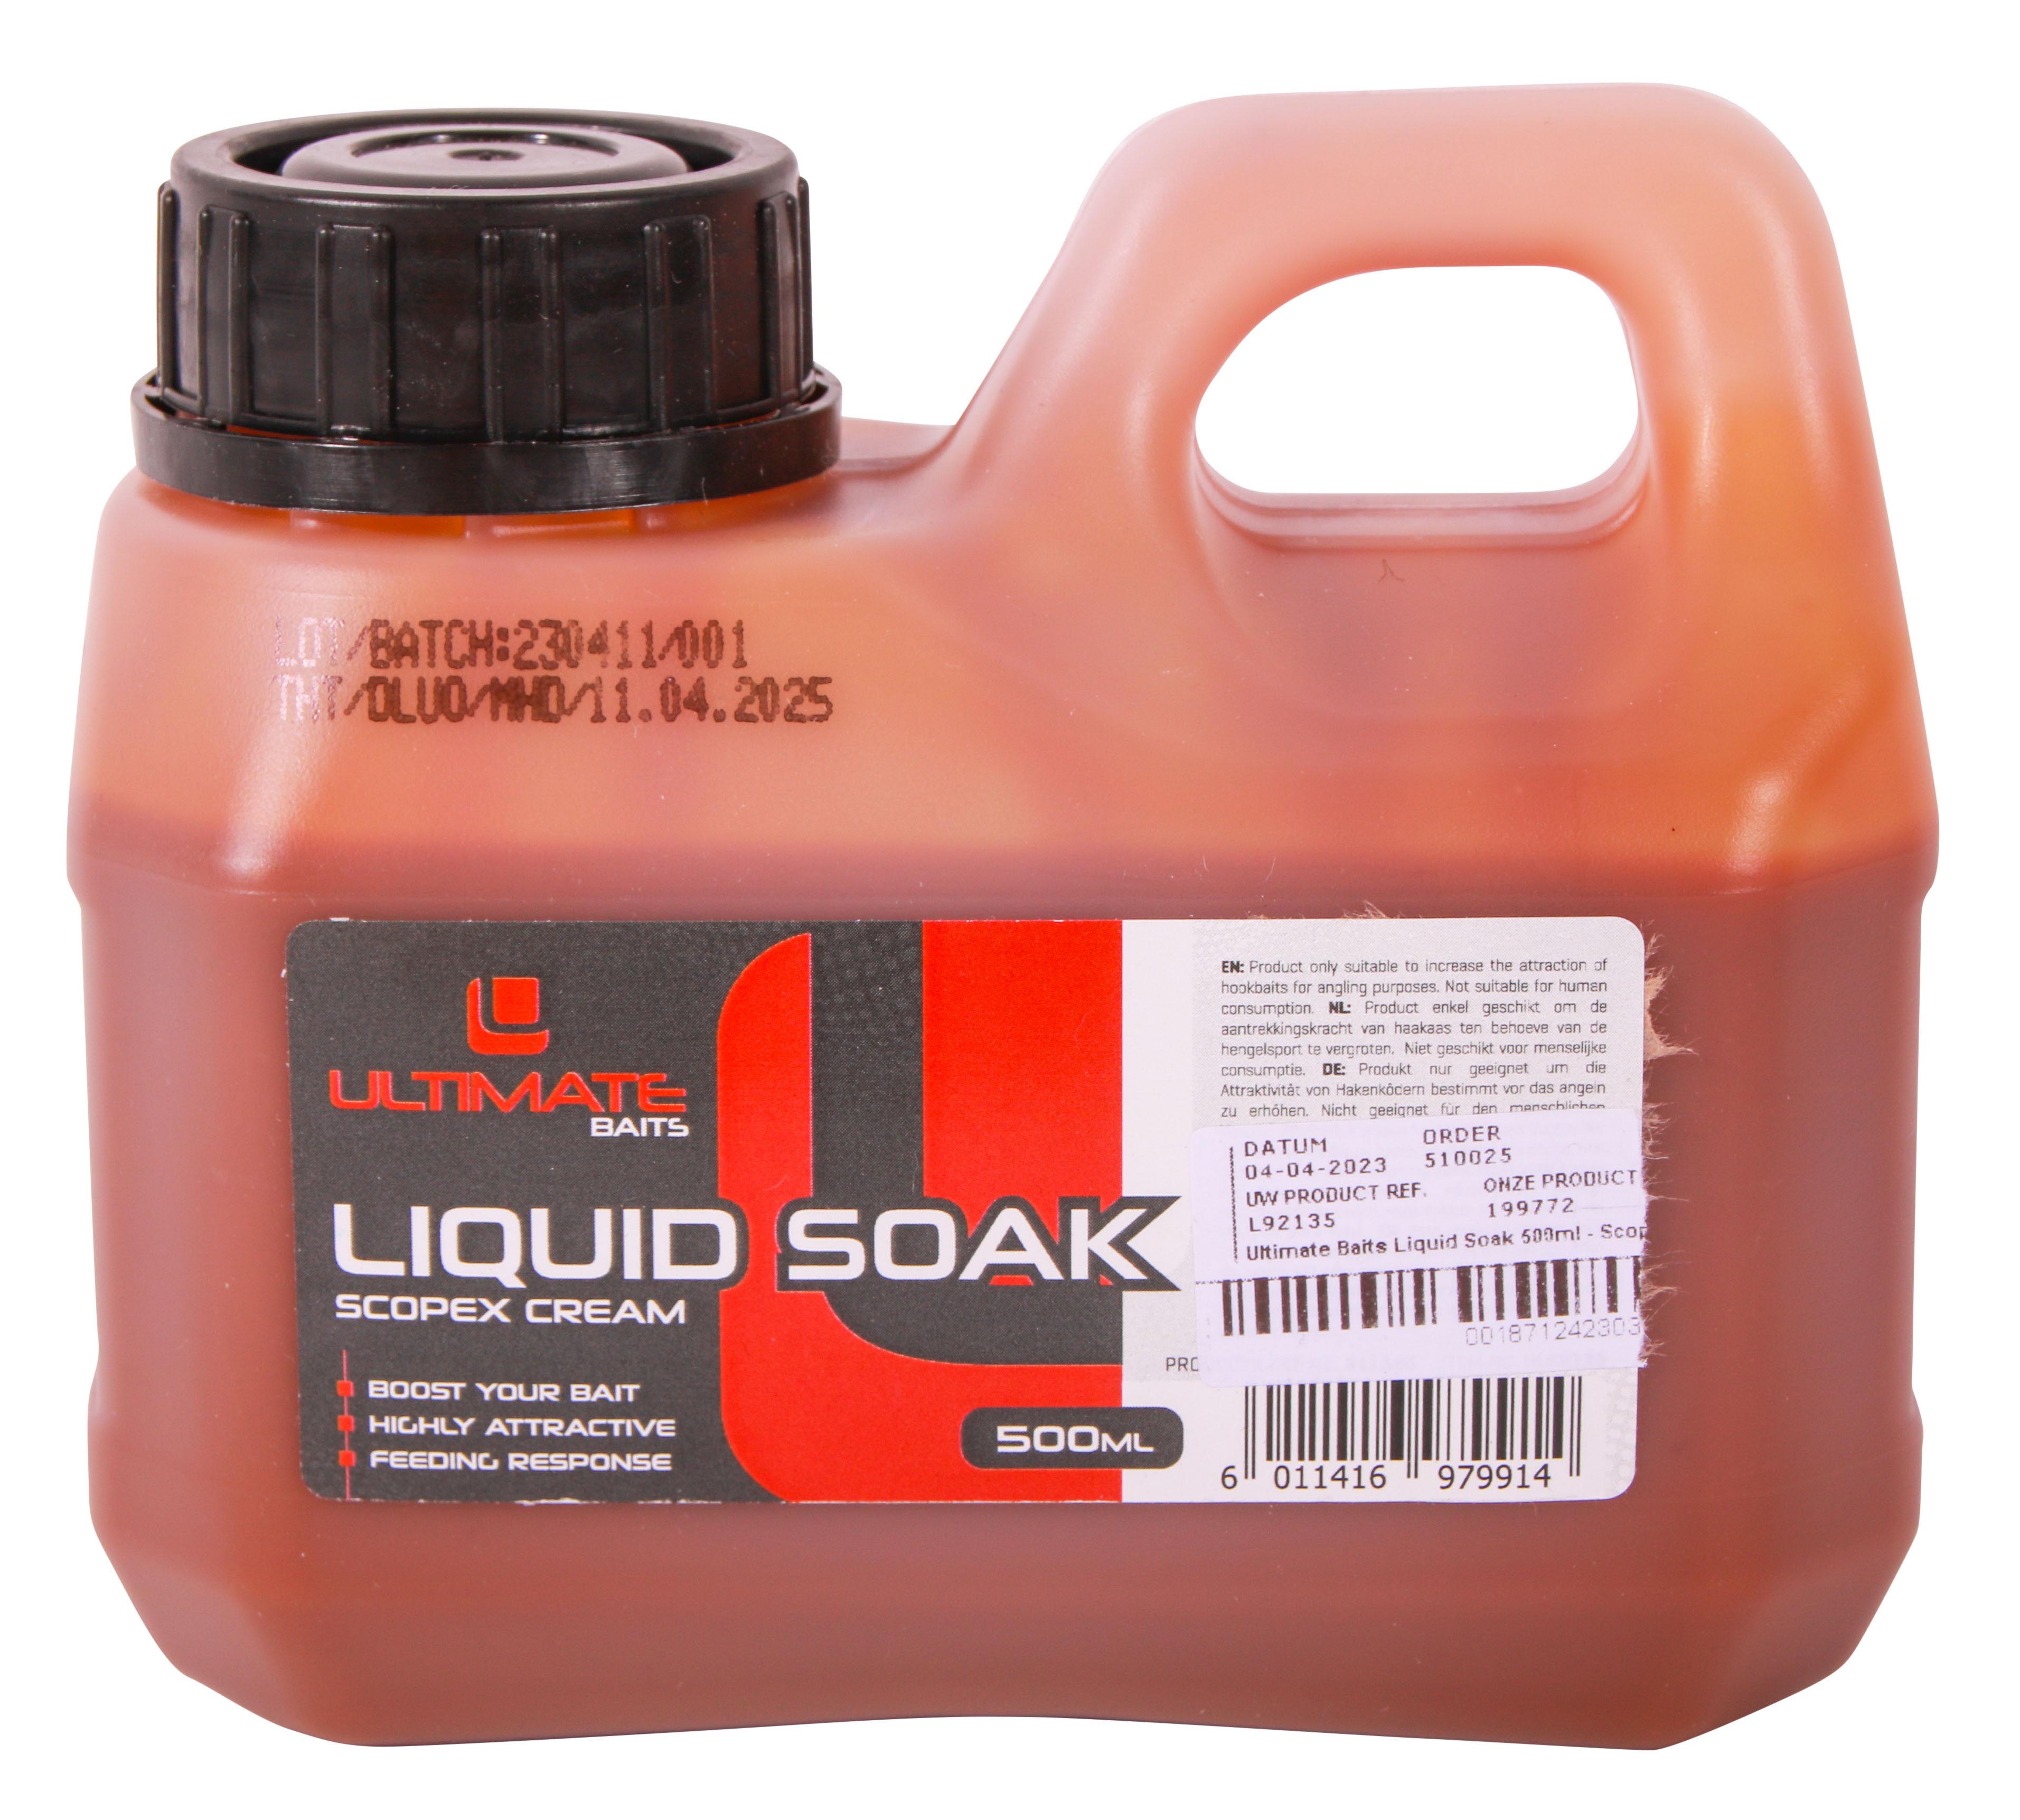 Ultimate Baits Liquid Soak 500ml - Scopex Cream